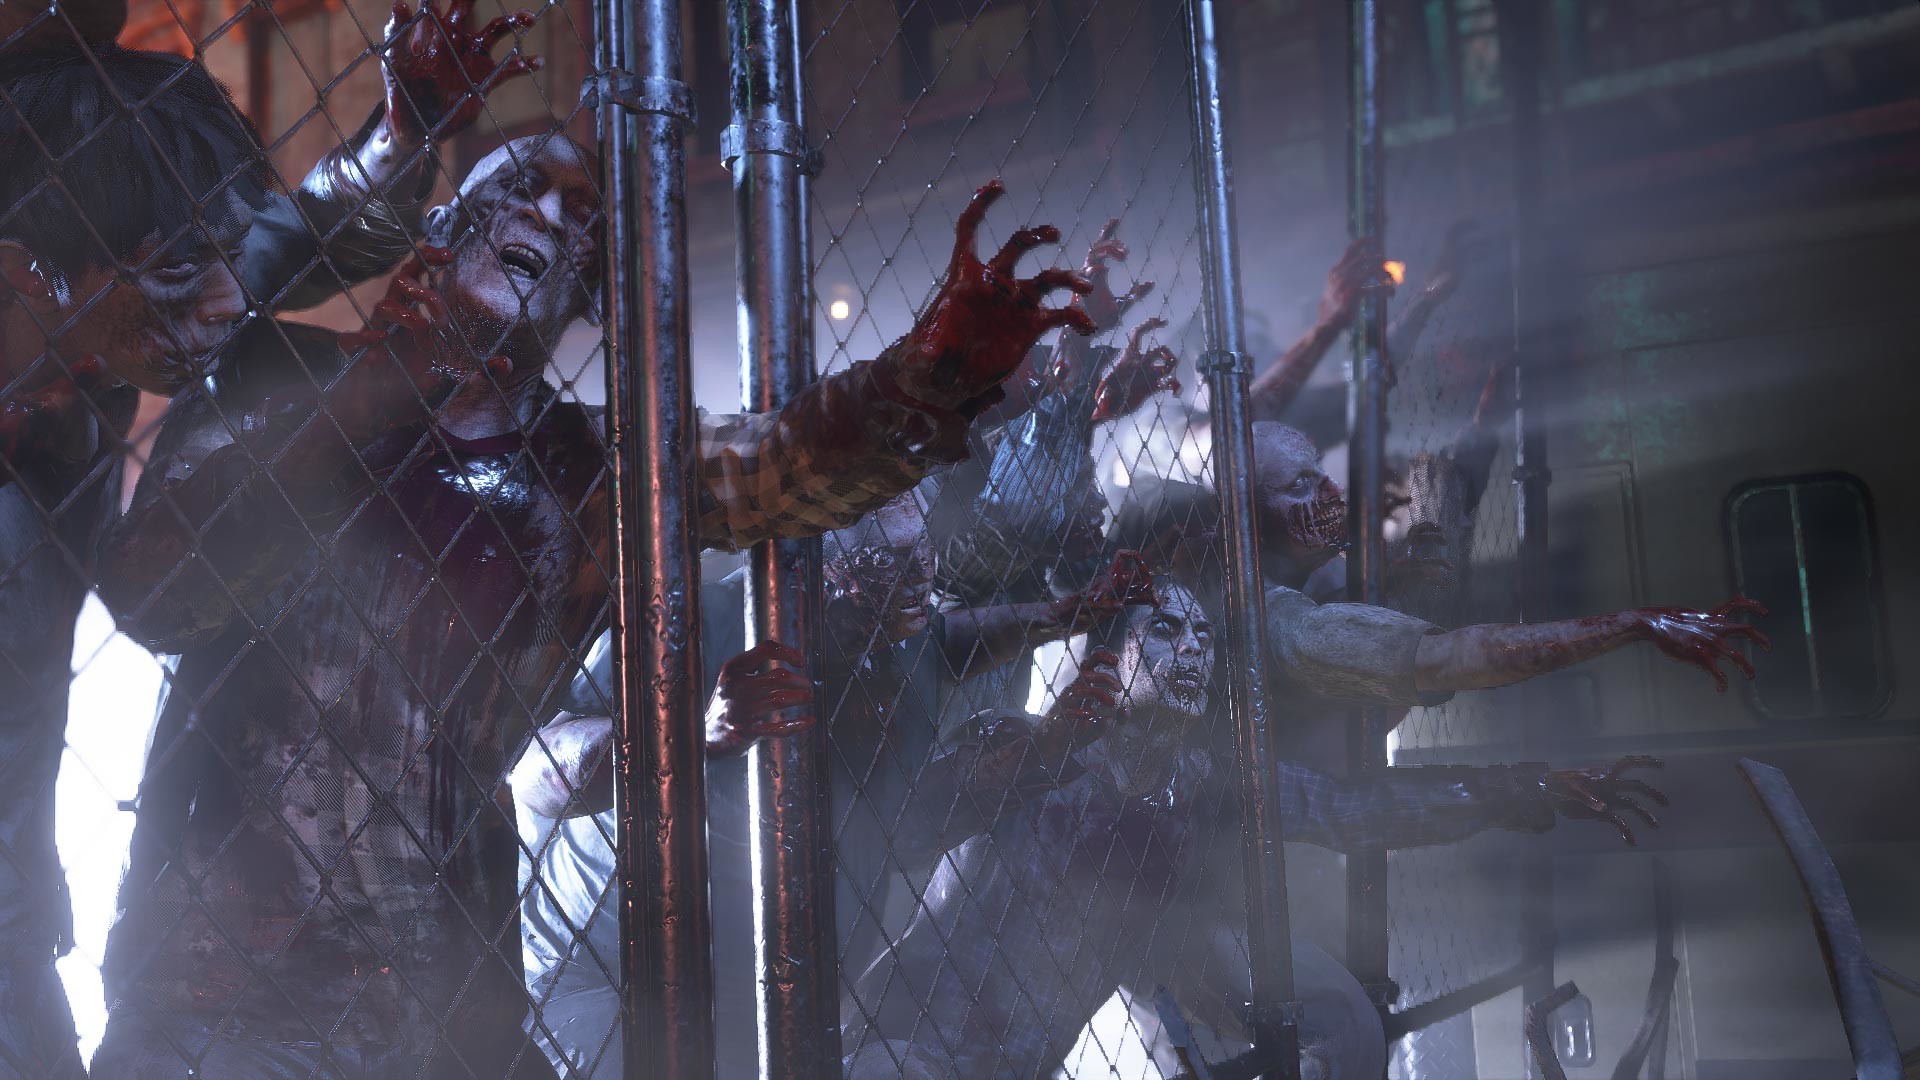 Resident Evil 3 Remake Pc - Loja DrexGames - A sua Loja De Games